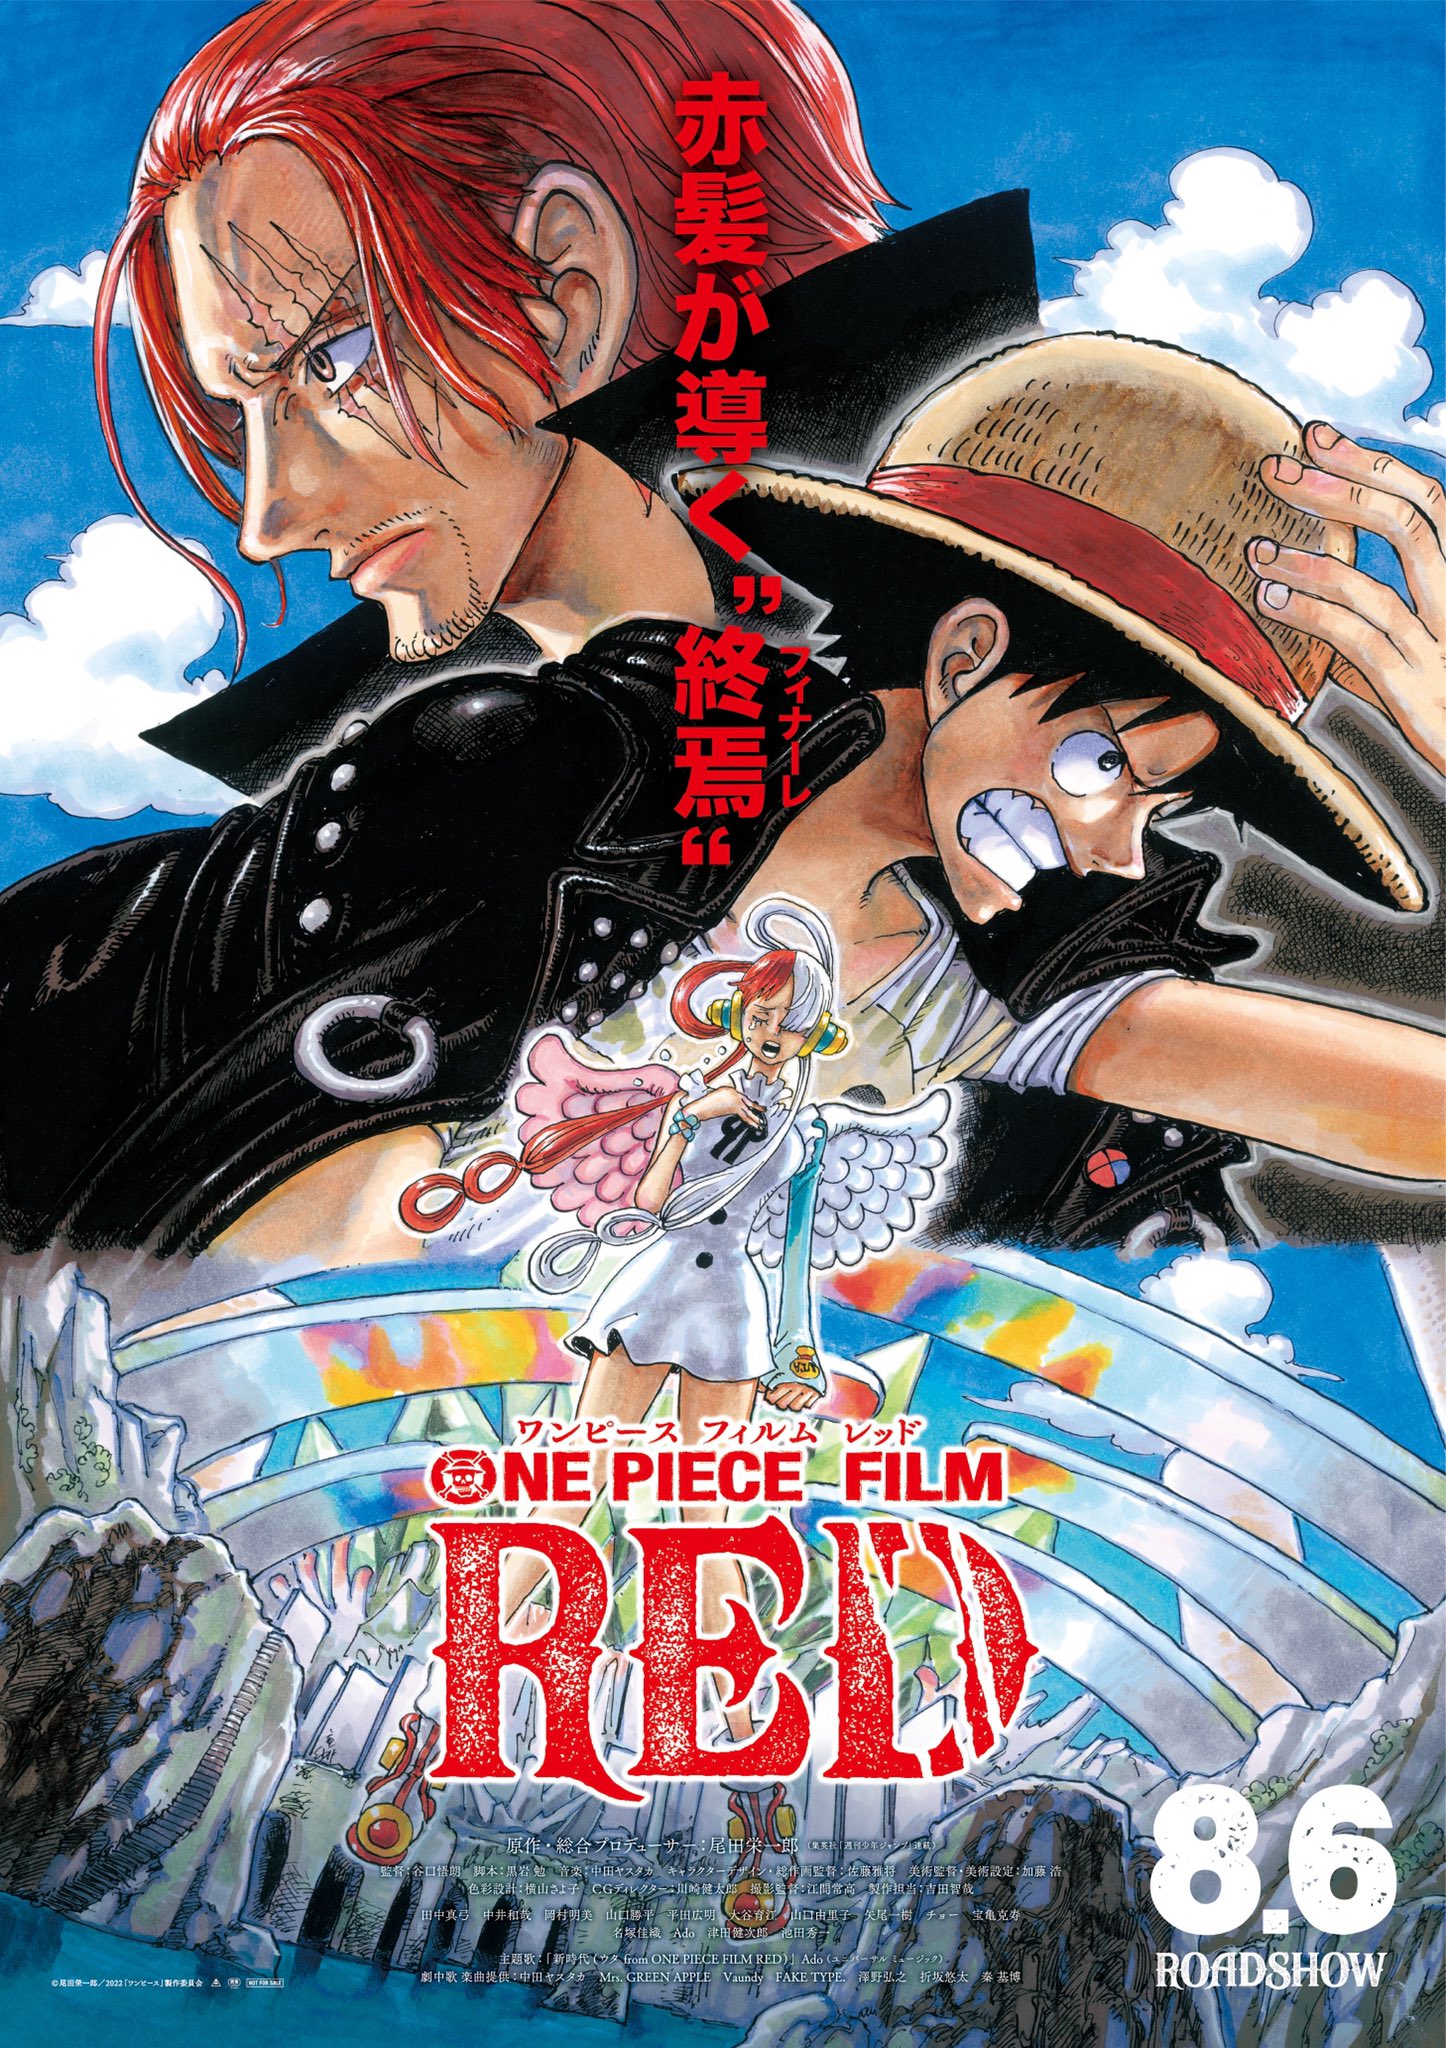 Datei:One Piece Film Red Poster.jpg – OPwiki - Das Wiki für One Piece